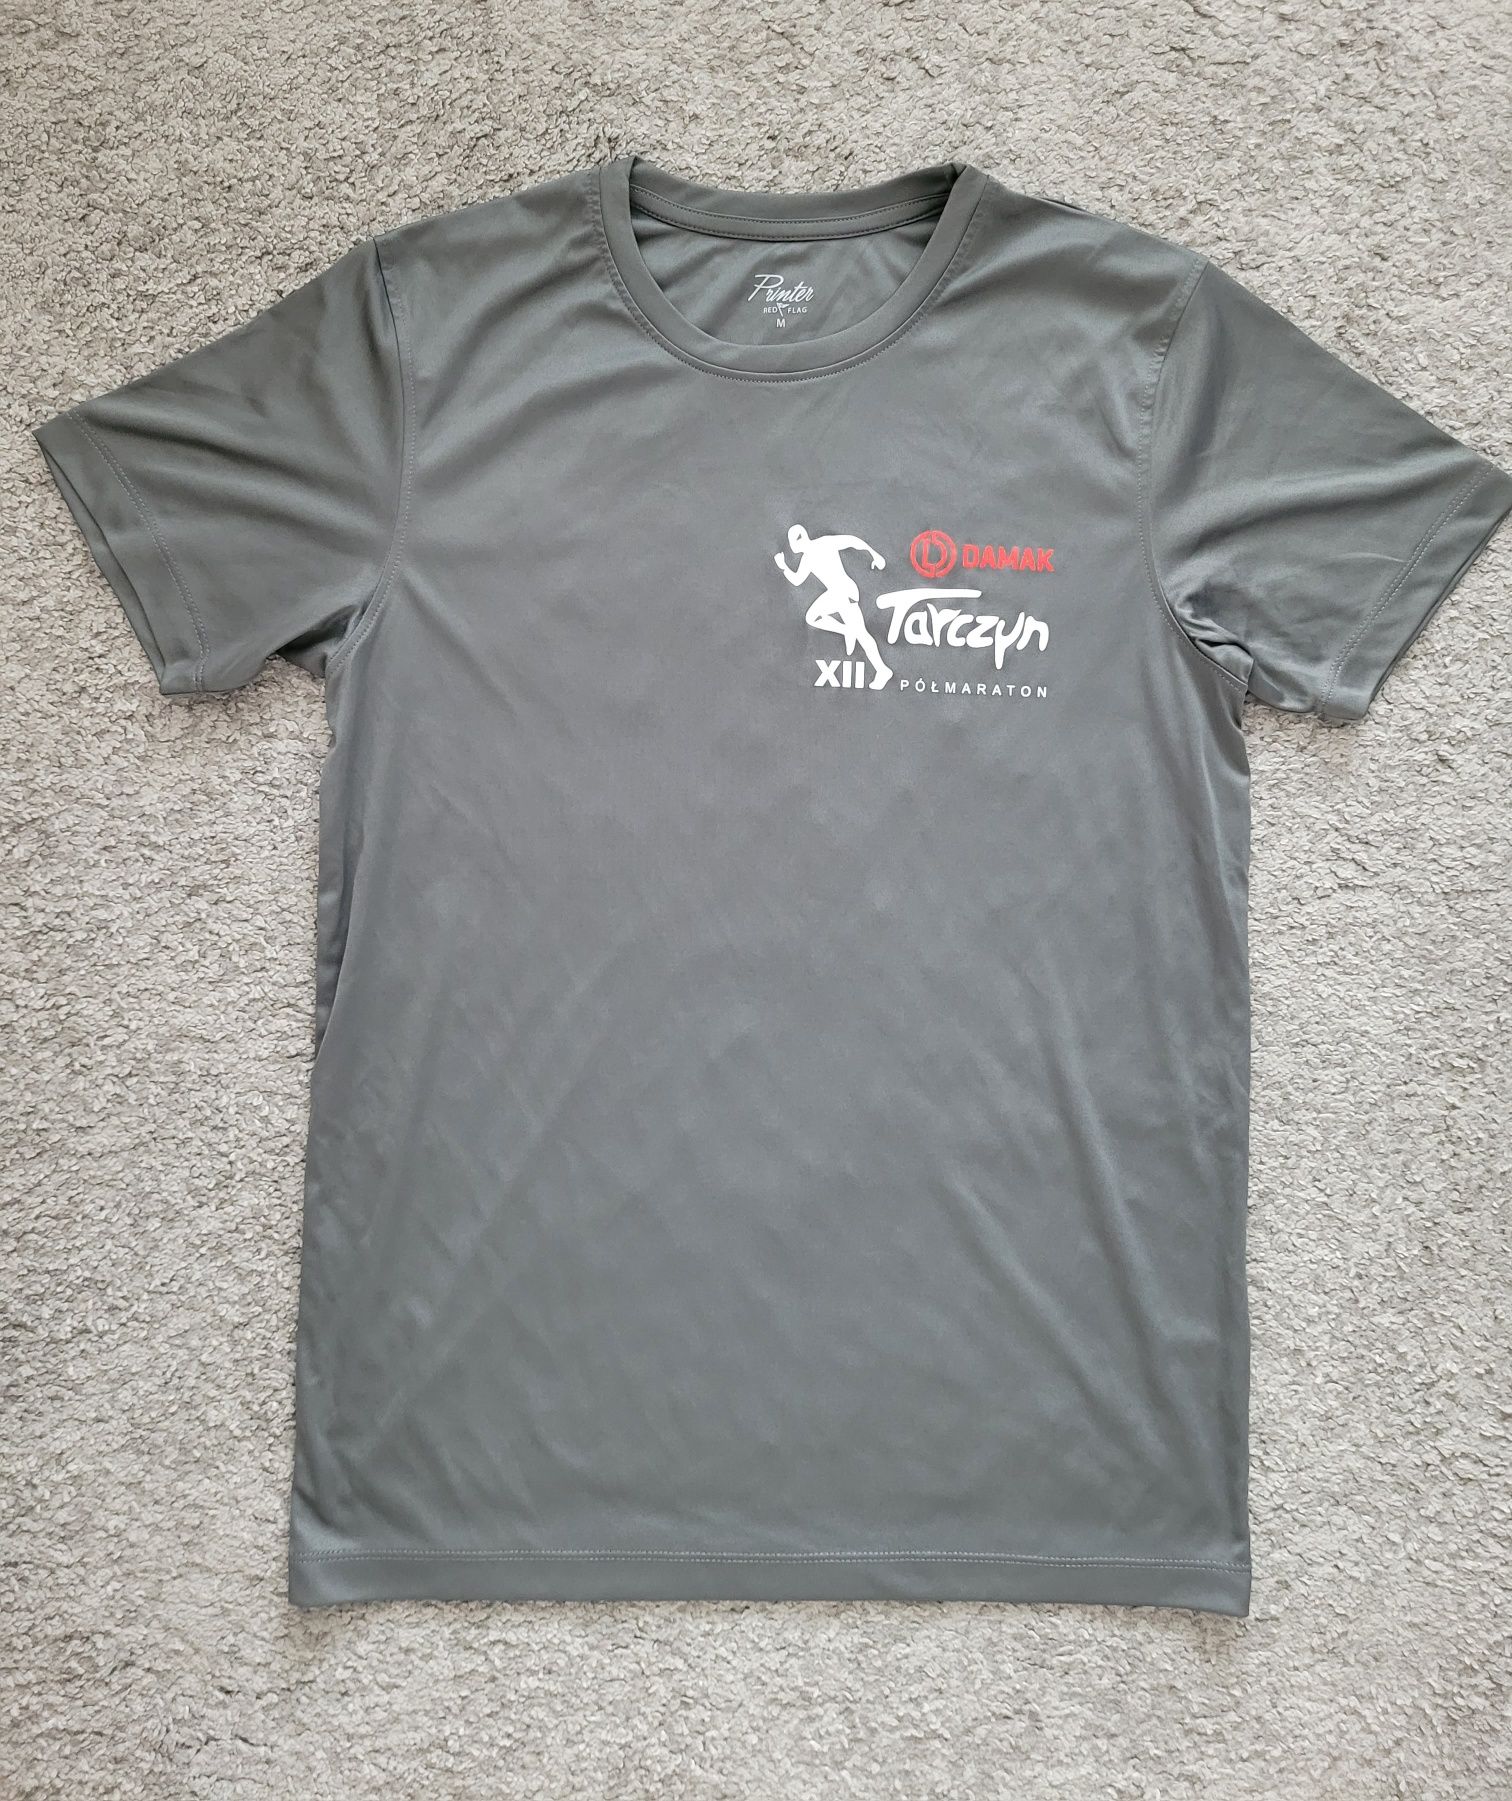 Koszulka techniczna do biegania M Tarczyn Półmaraton